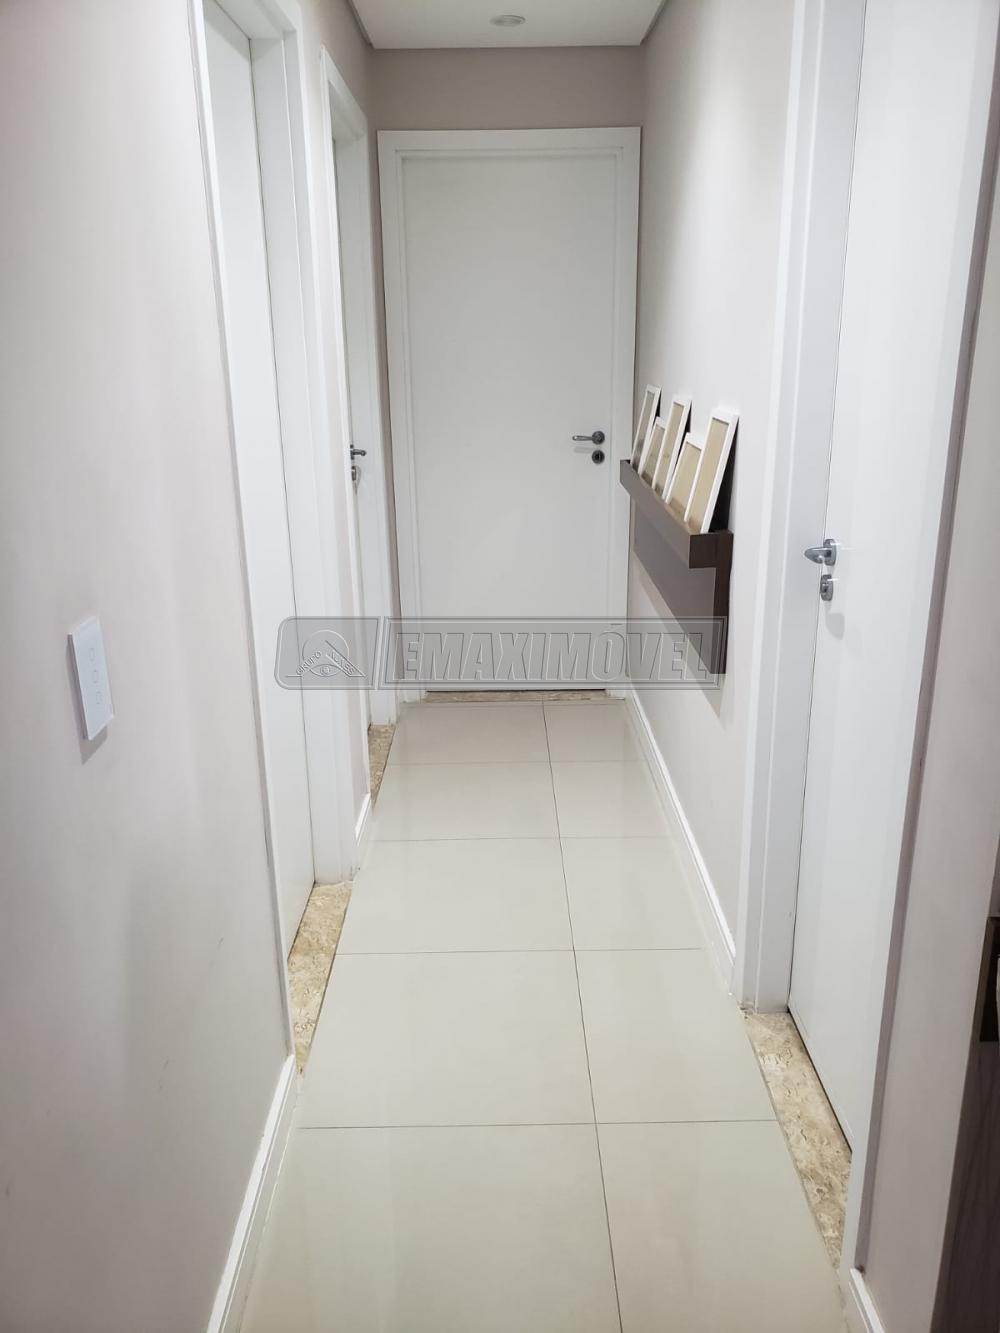 Comprar Apartamento / Padrão em Sorocaba R$ 490.000,00 - Foto 15